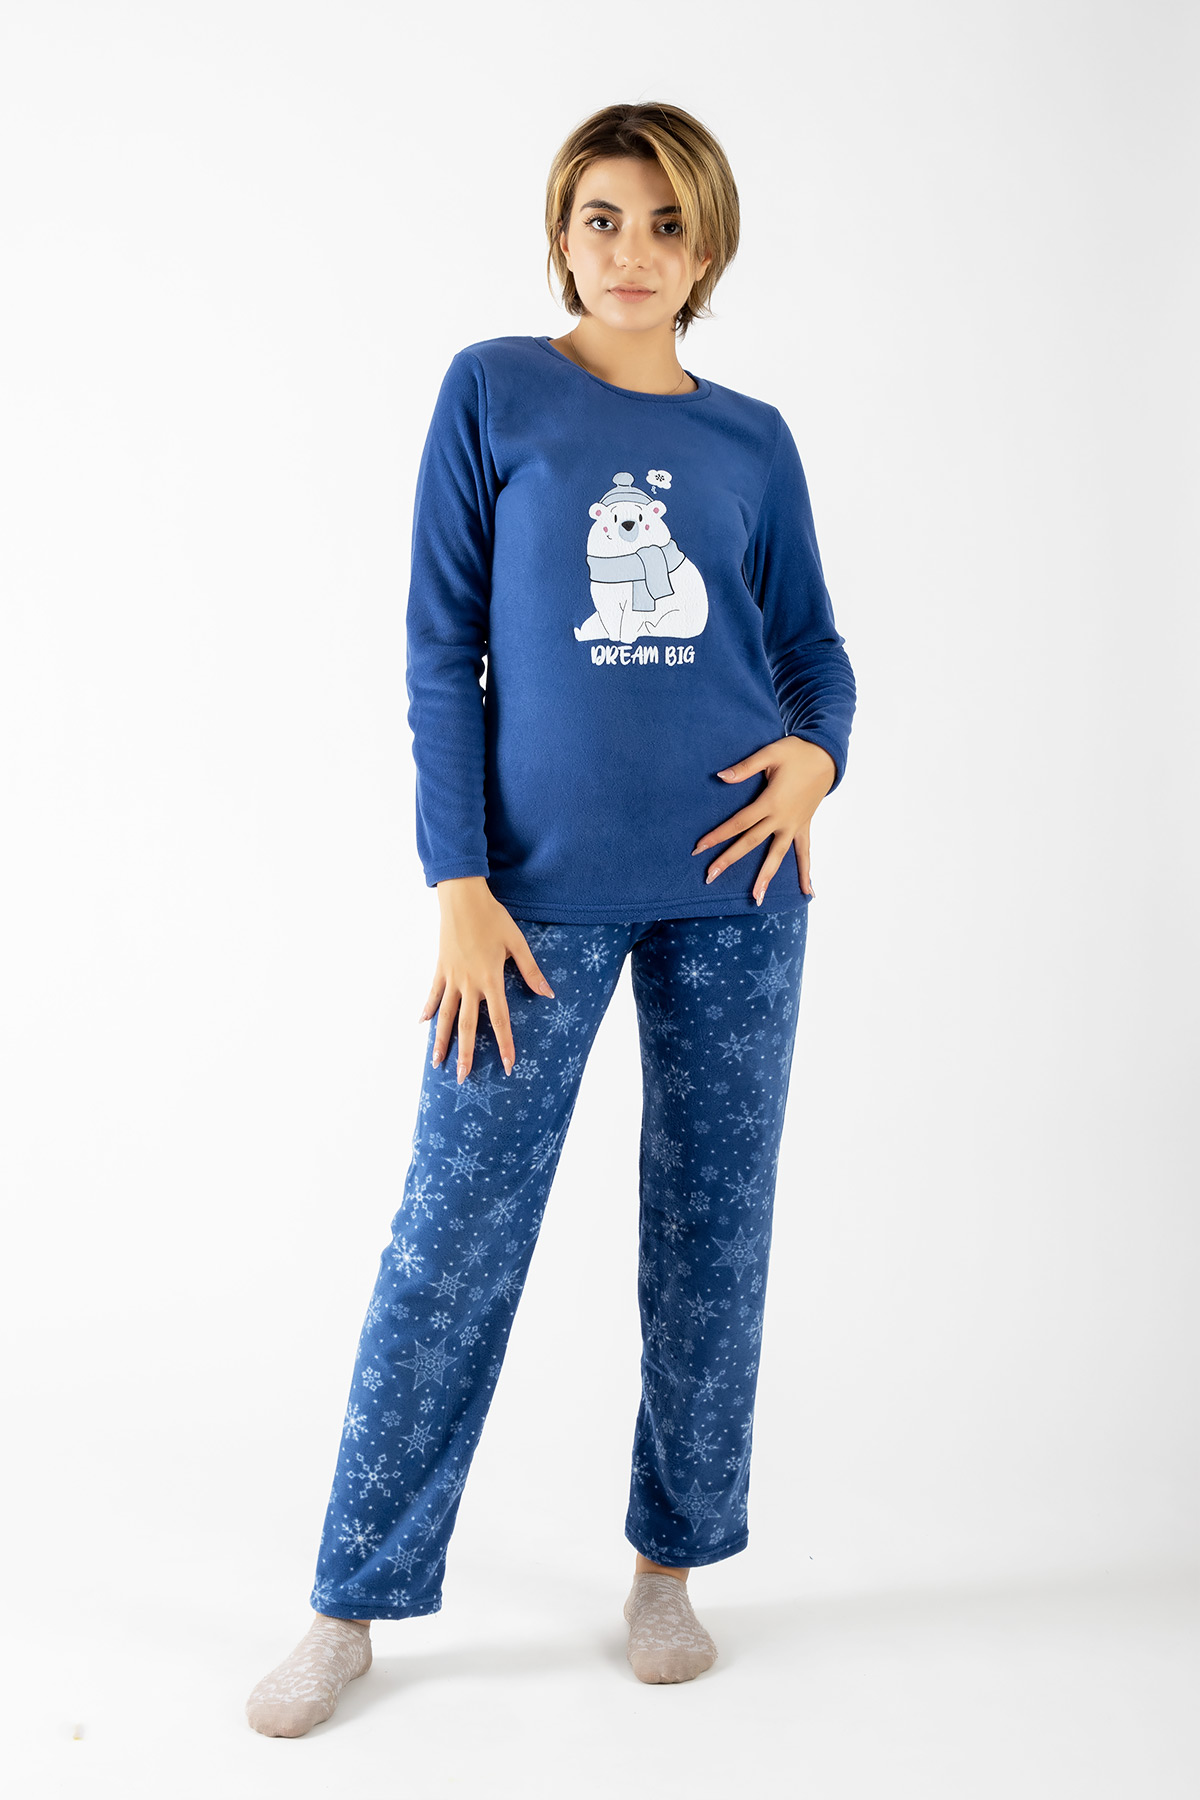 Dofi Kadın Polar Pijama Takımı